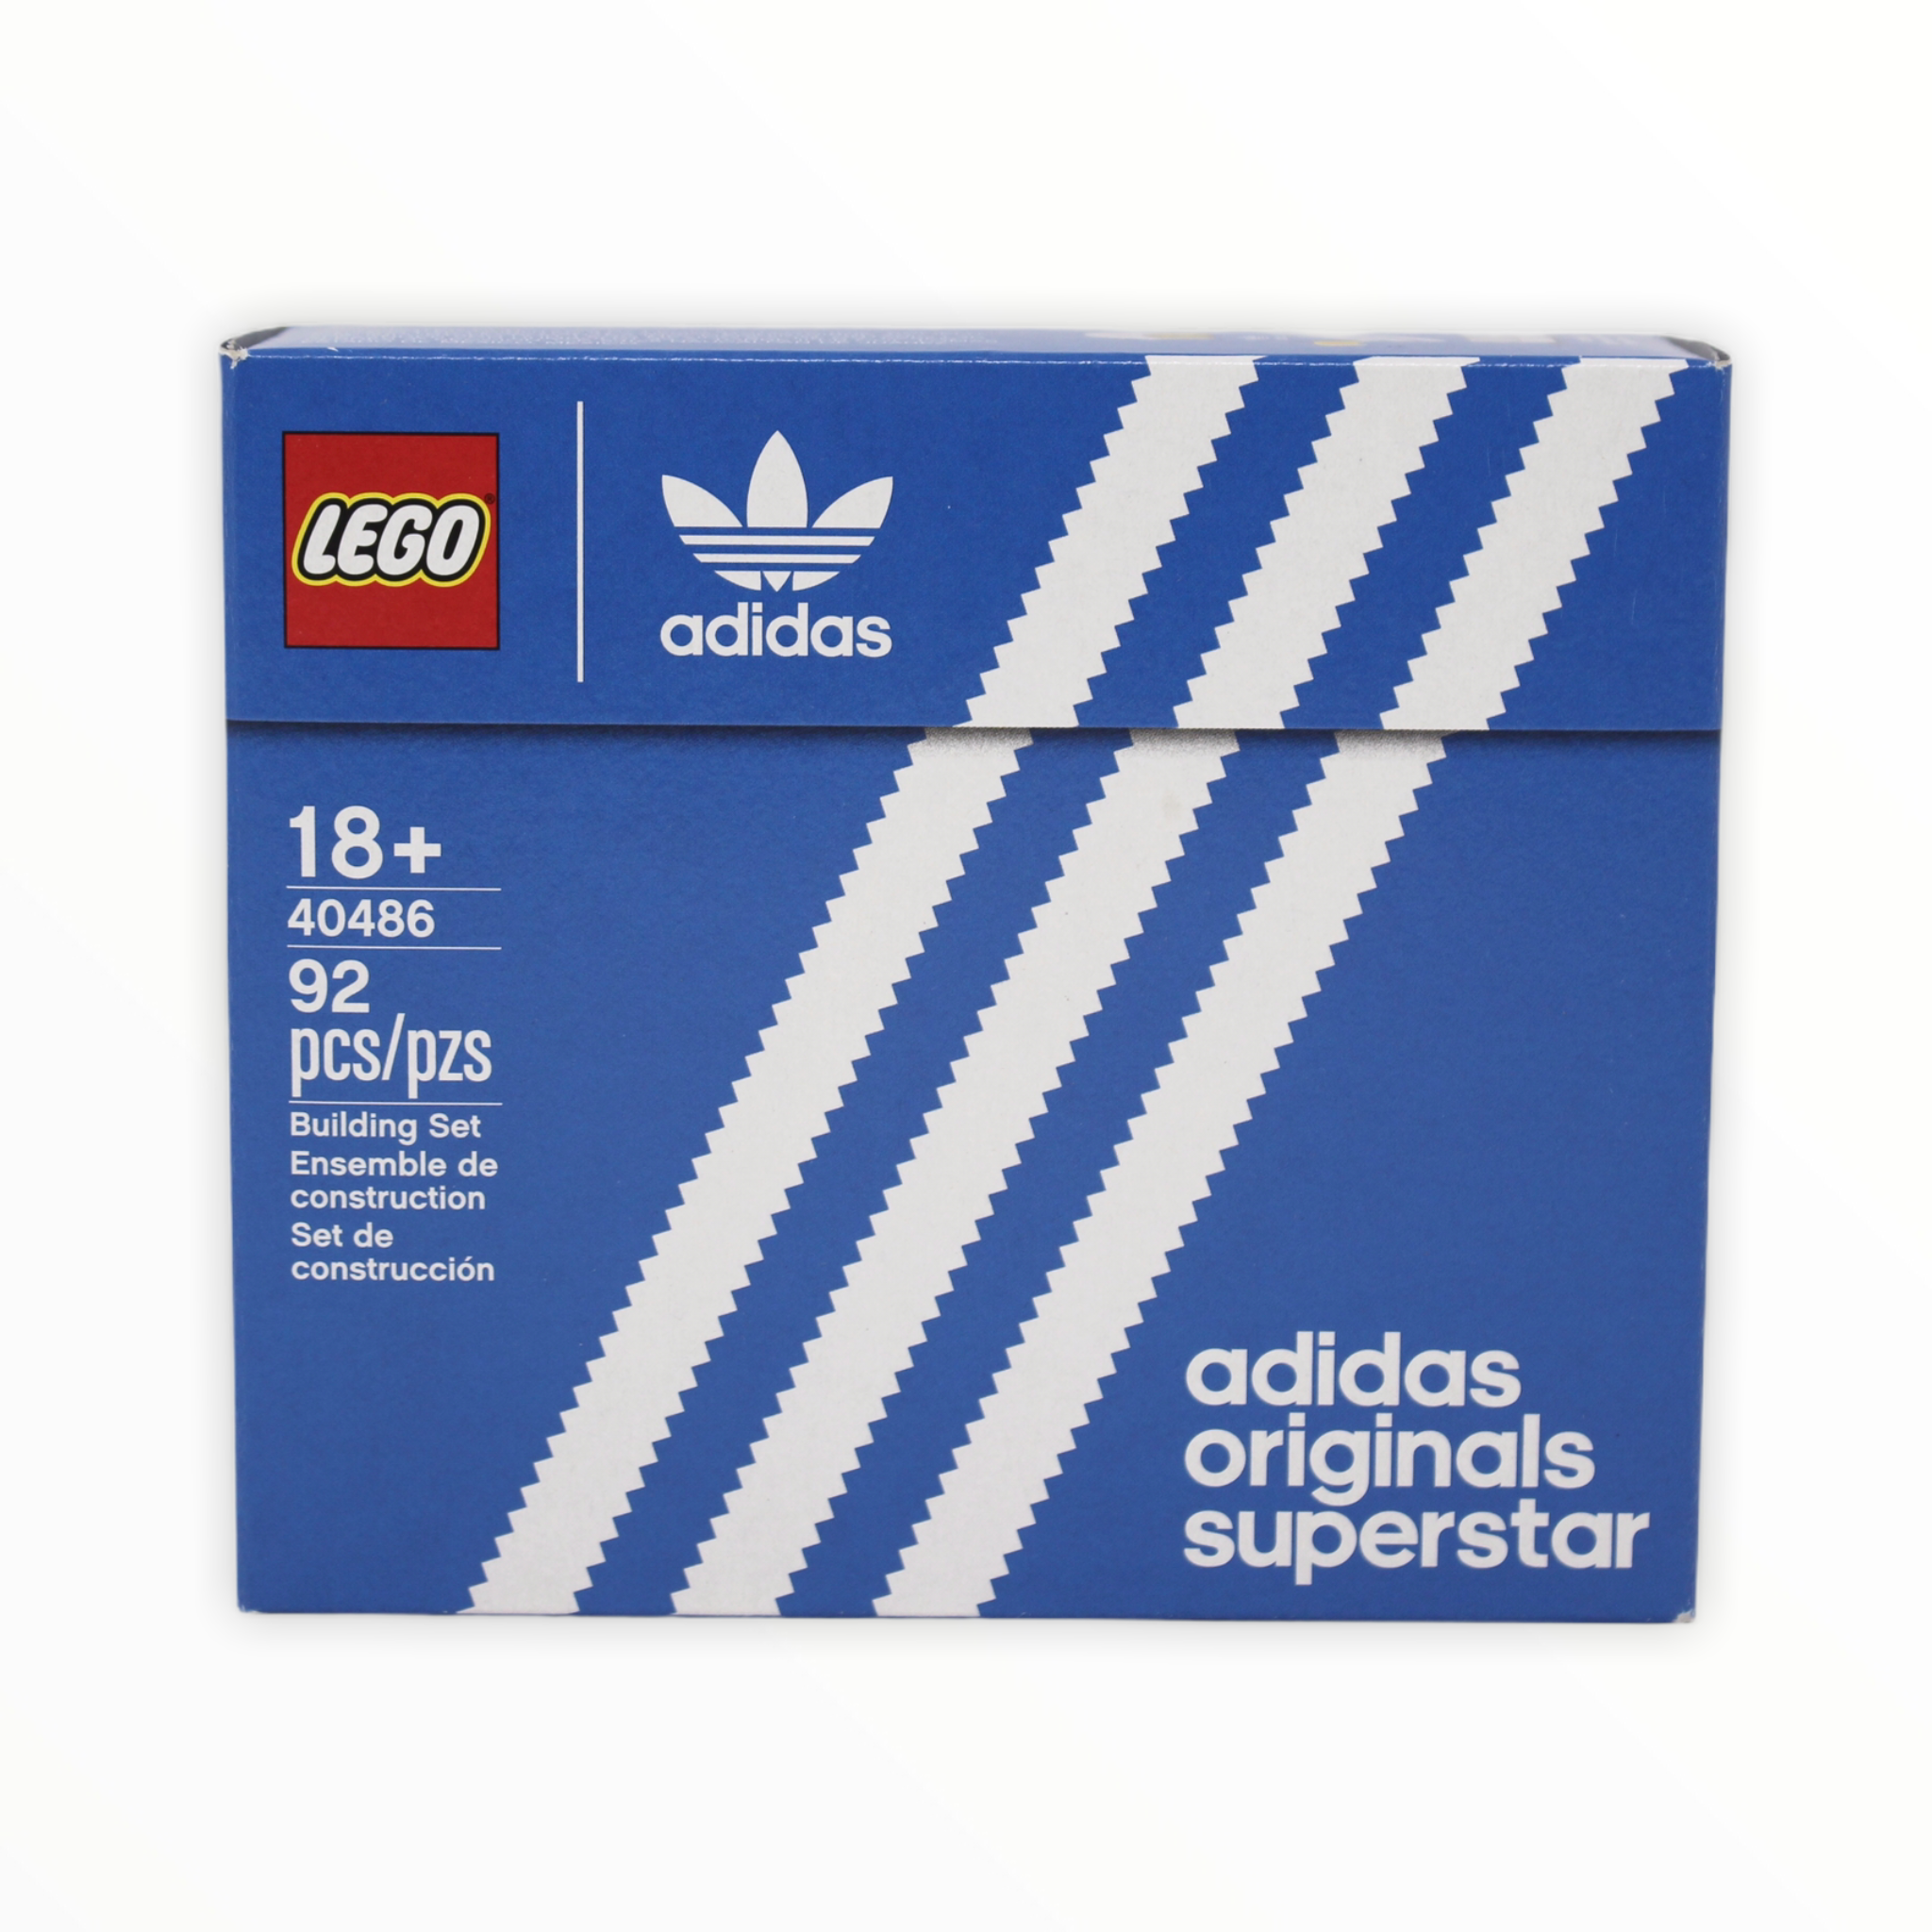 Retired Set 40486 LEGO Mini Adidas Originals Superstar